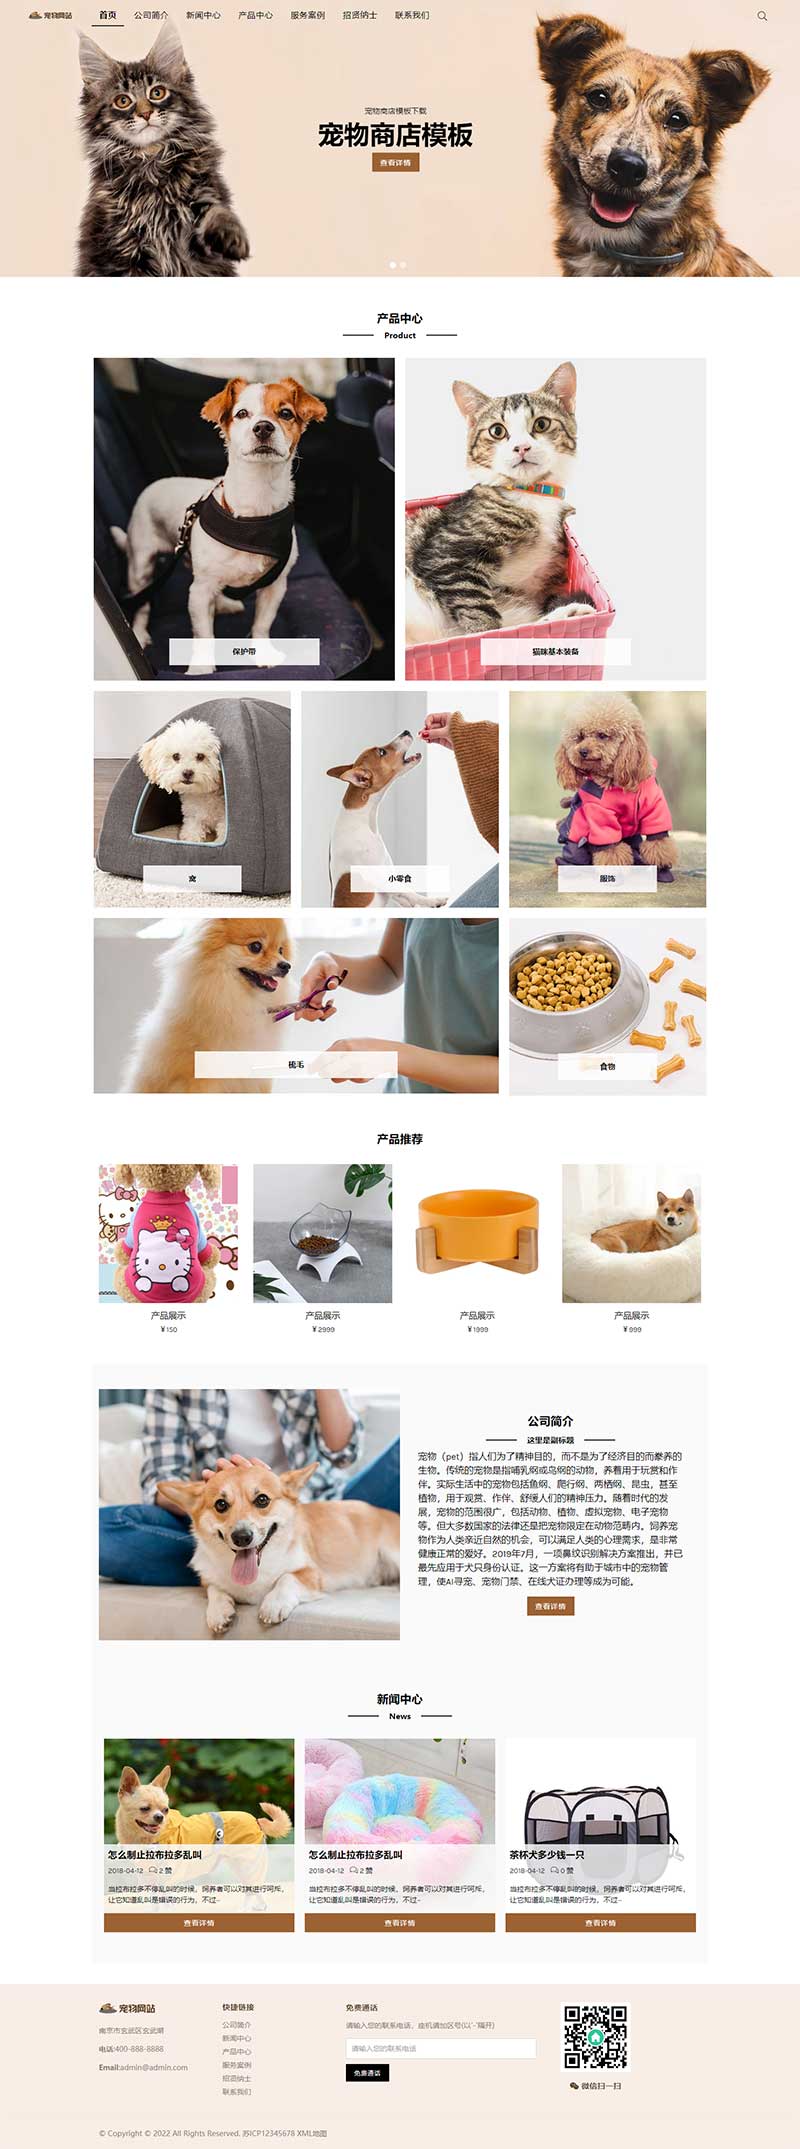 (自适应移动端)宠物商店宠物装备类网站pbootcms模板 宠物网站源码下载